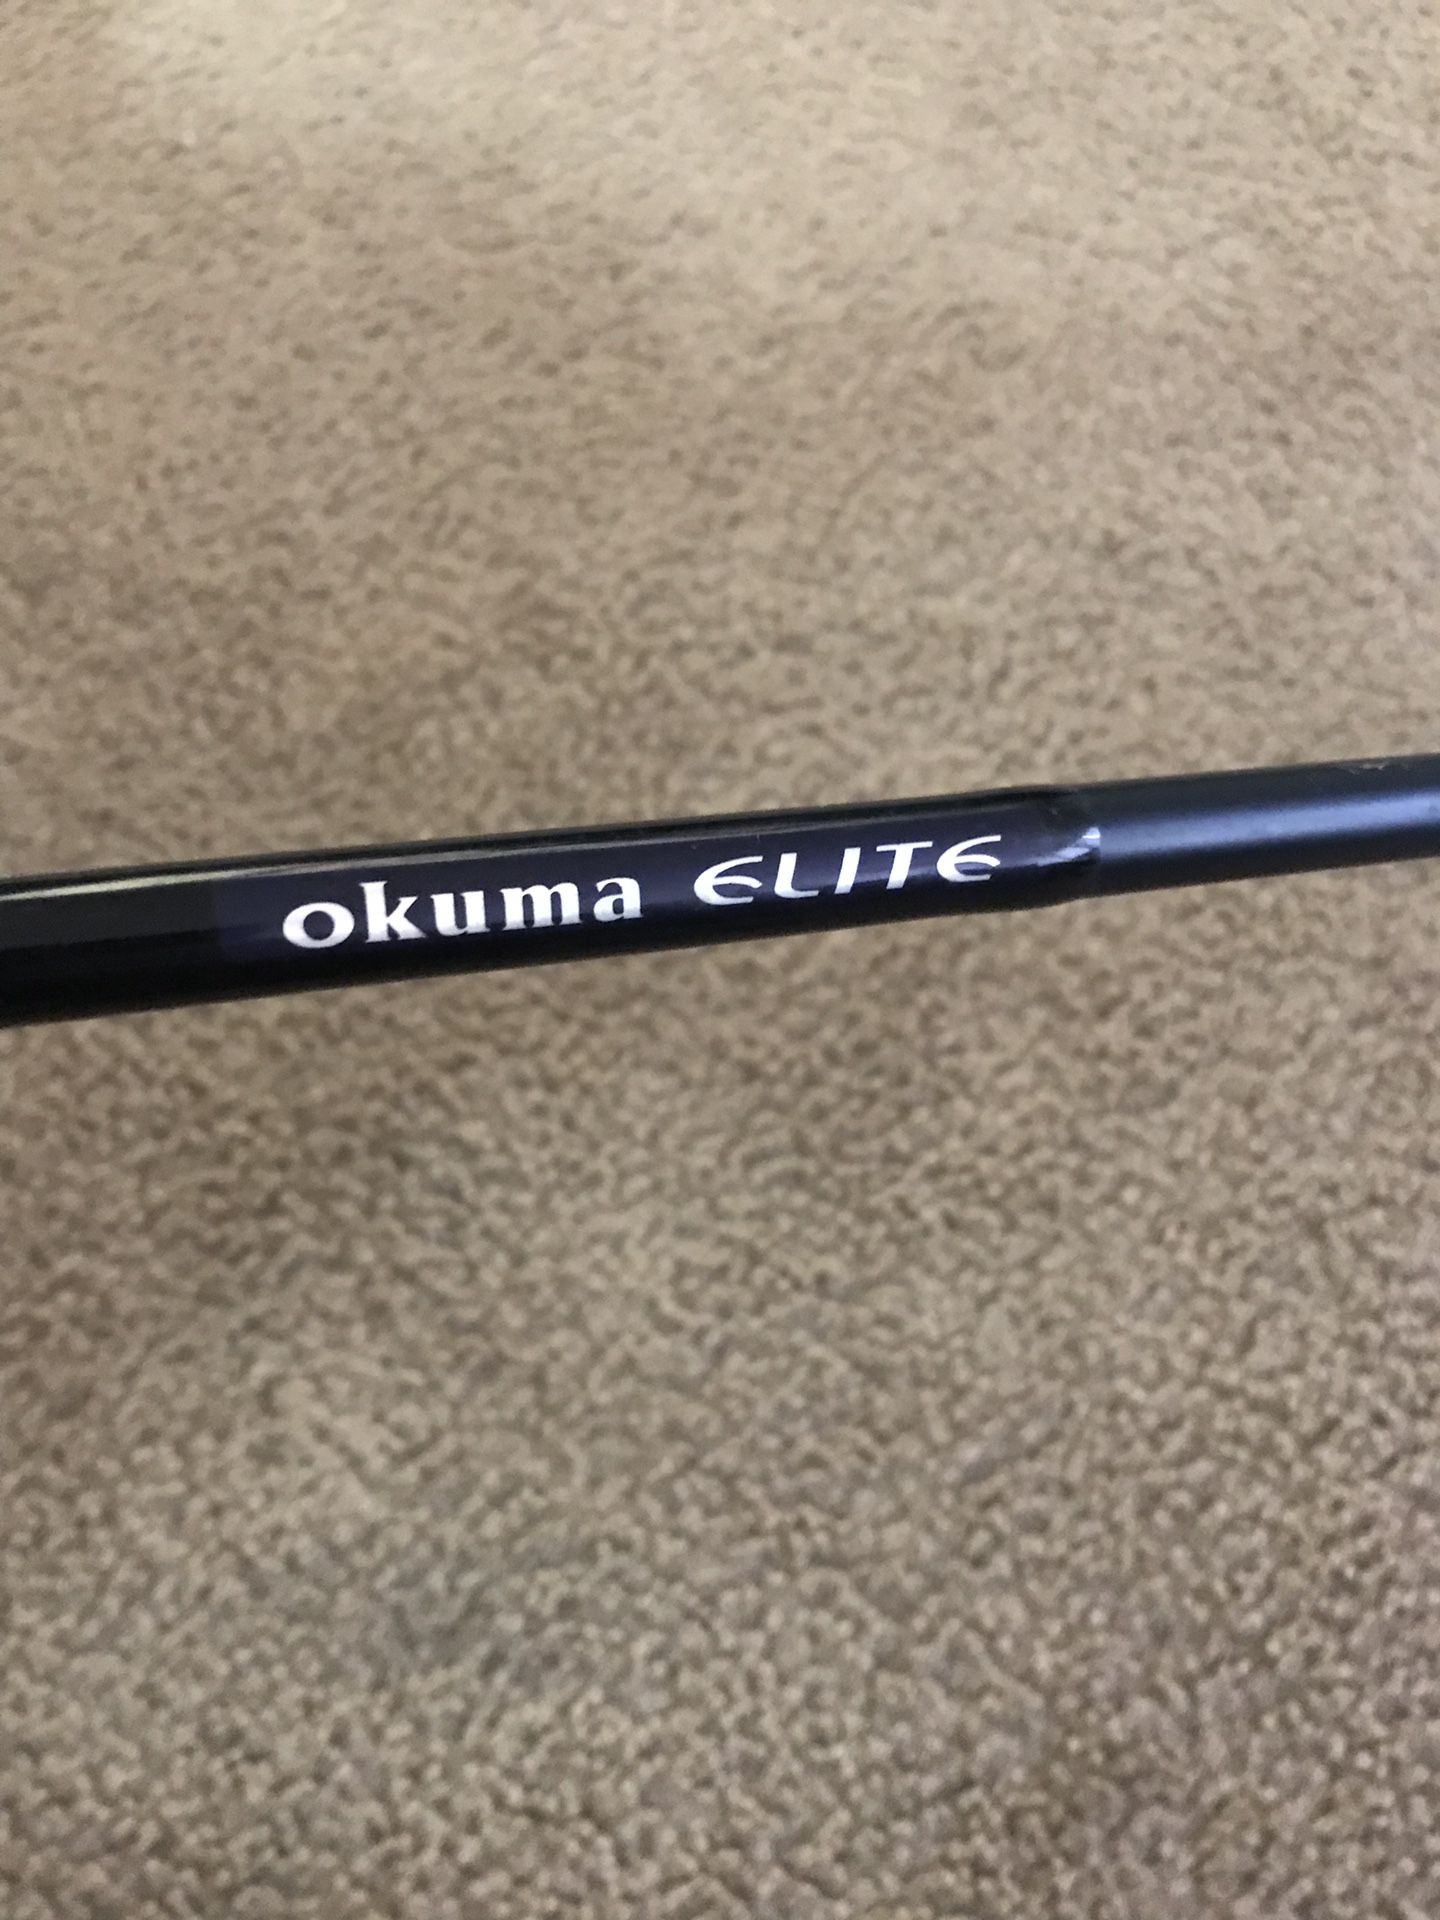 Okuma elite fishing rod